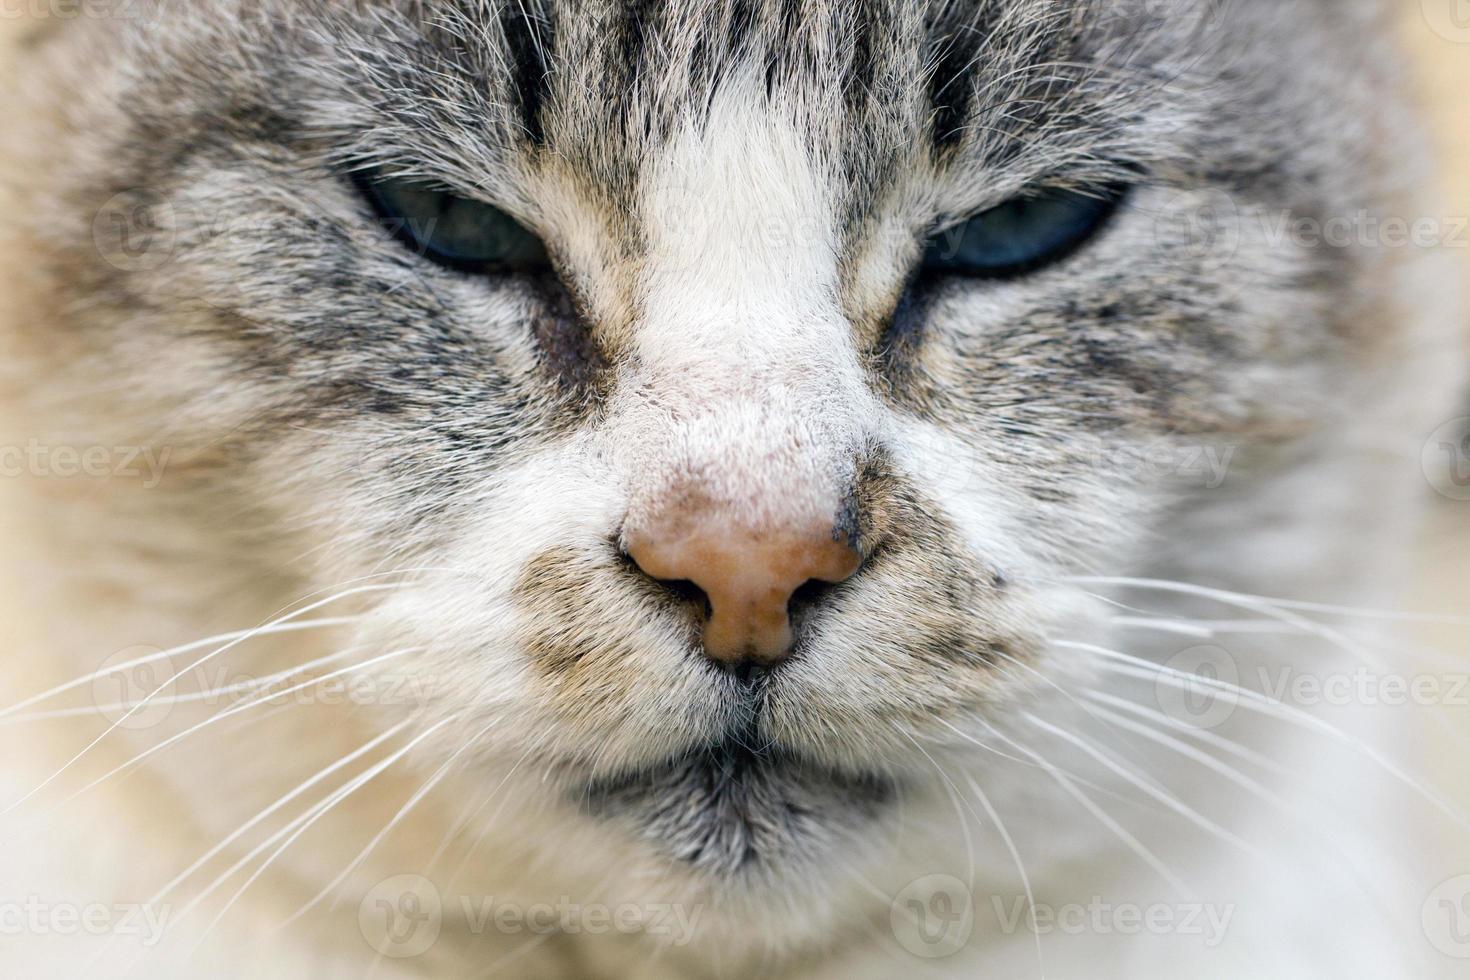 domestic cat closeup photo